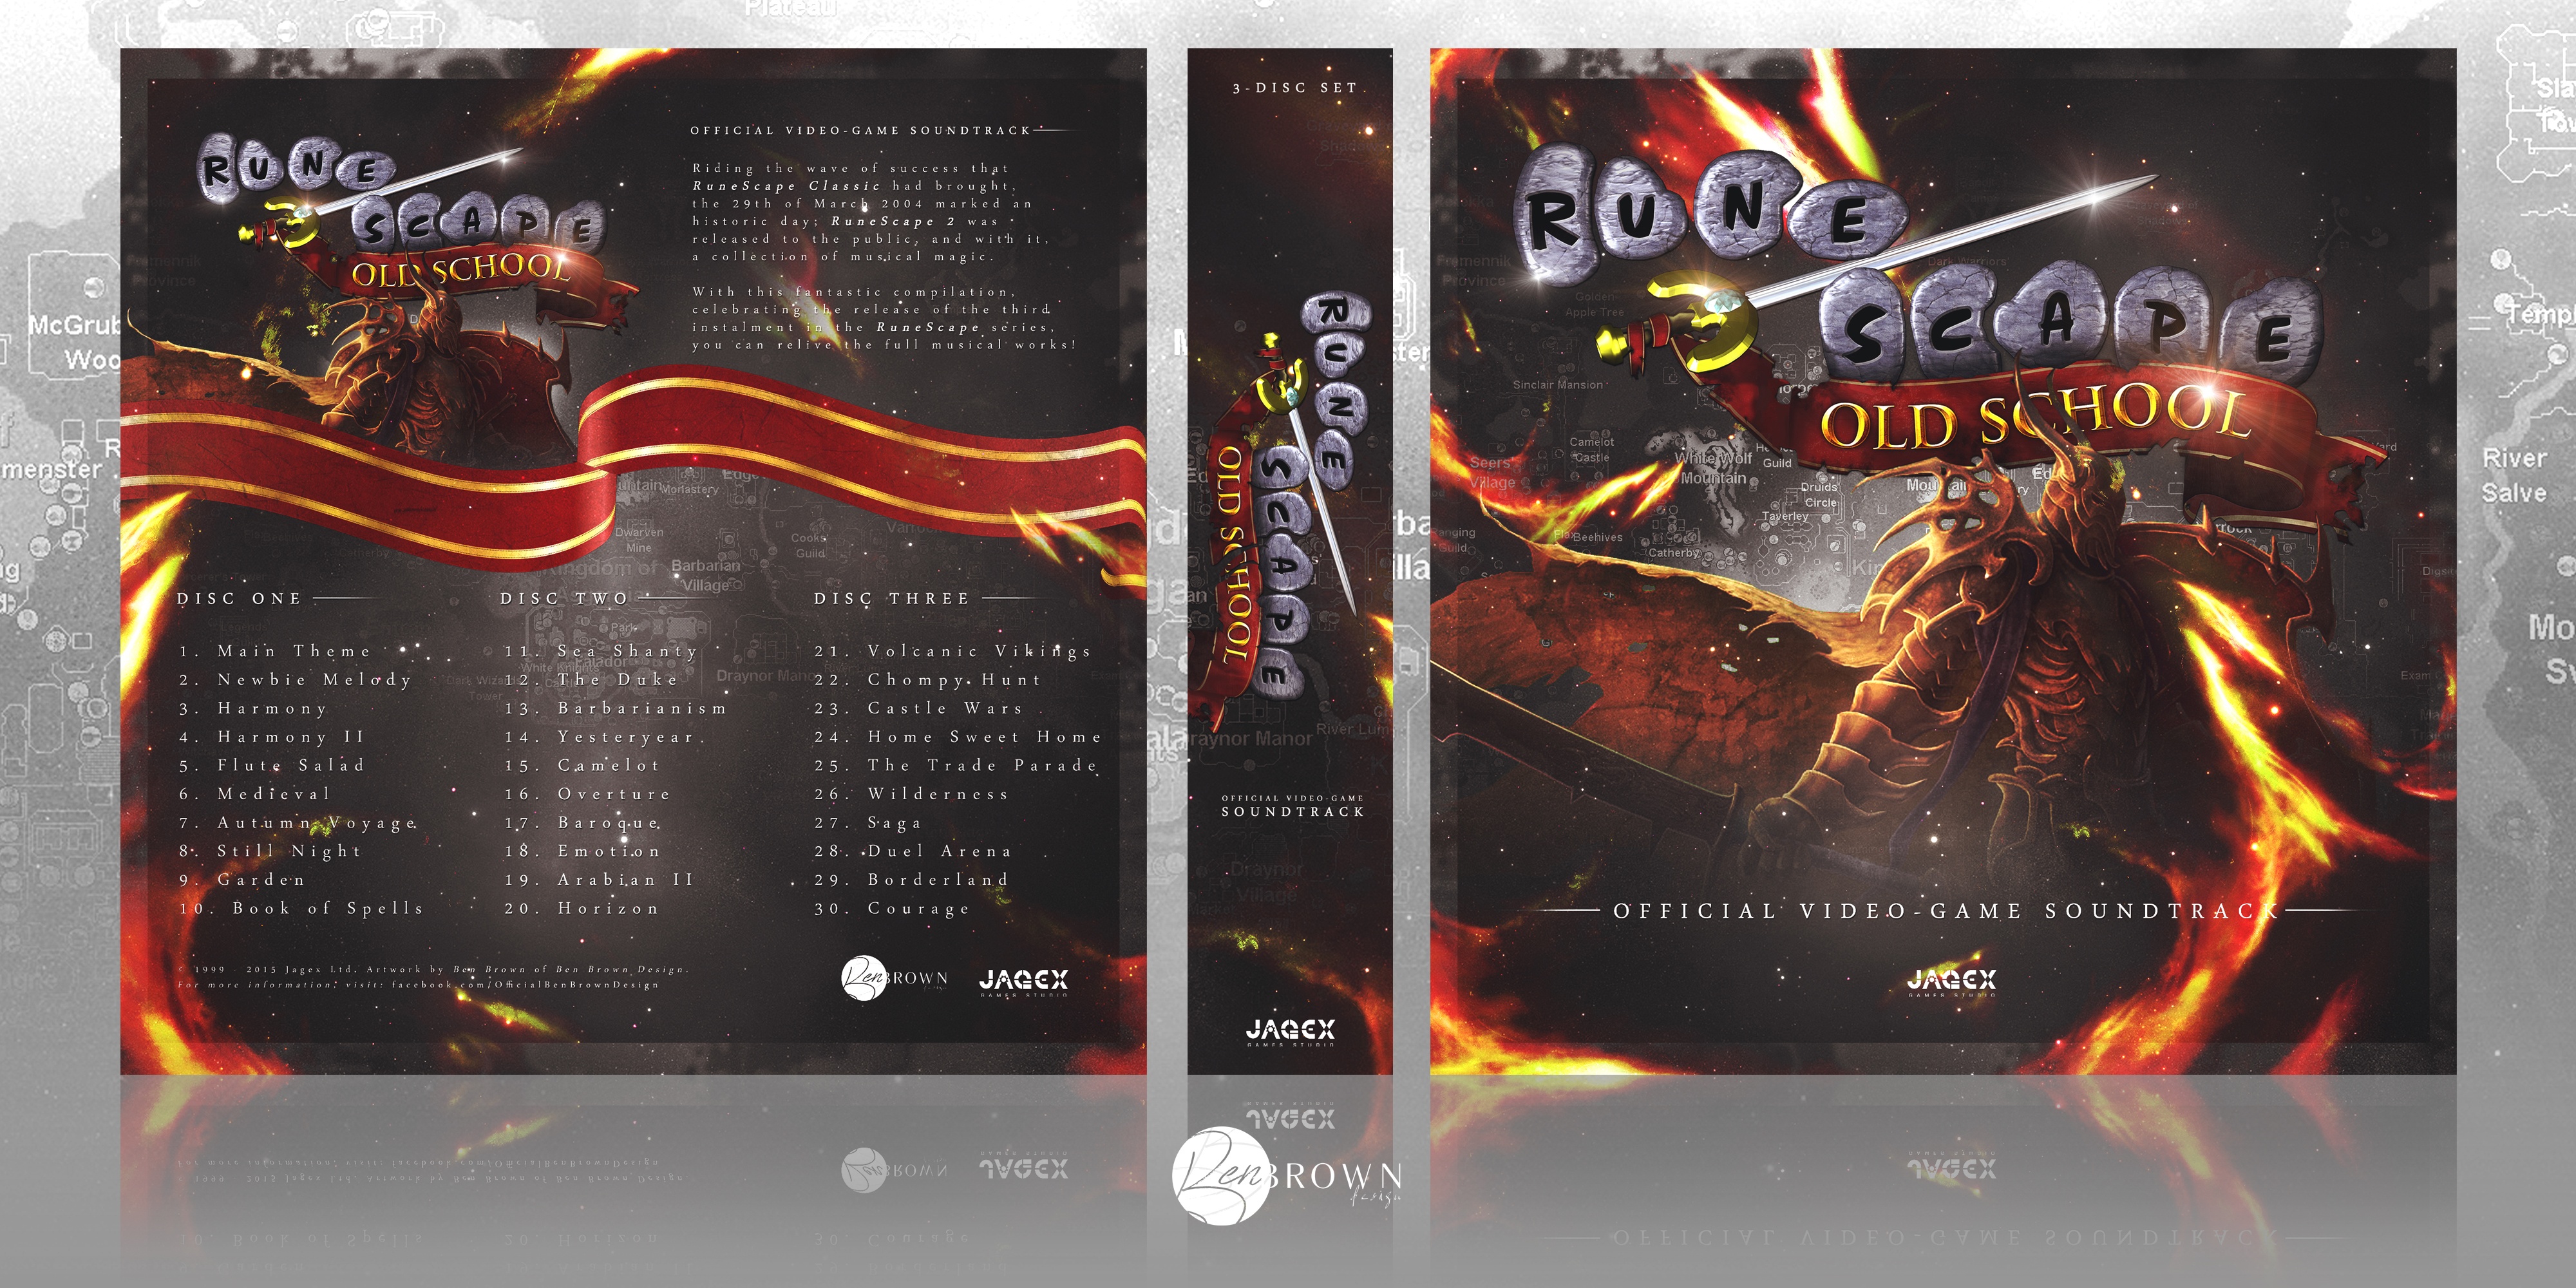 RuneScape: Old School - Game Soundtrack box cover